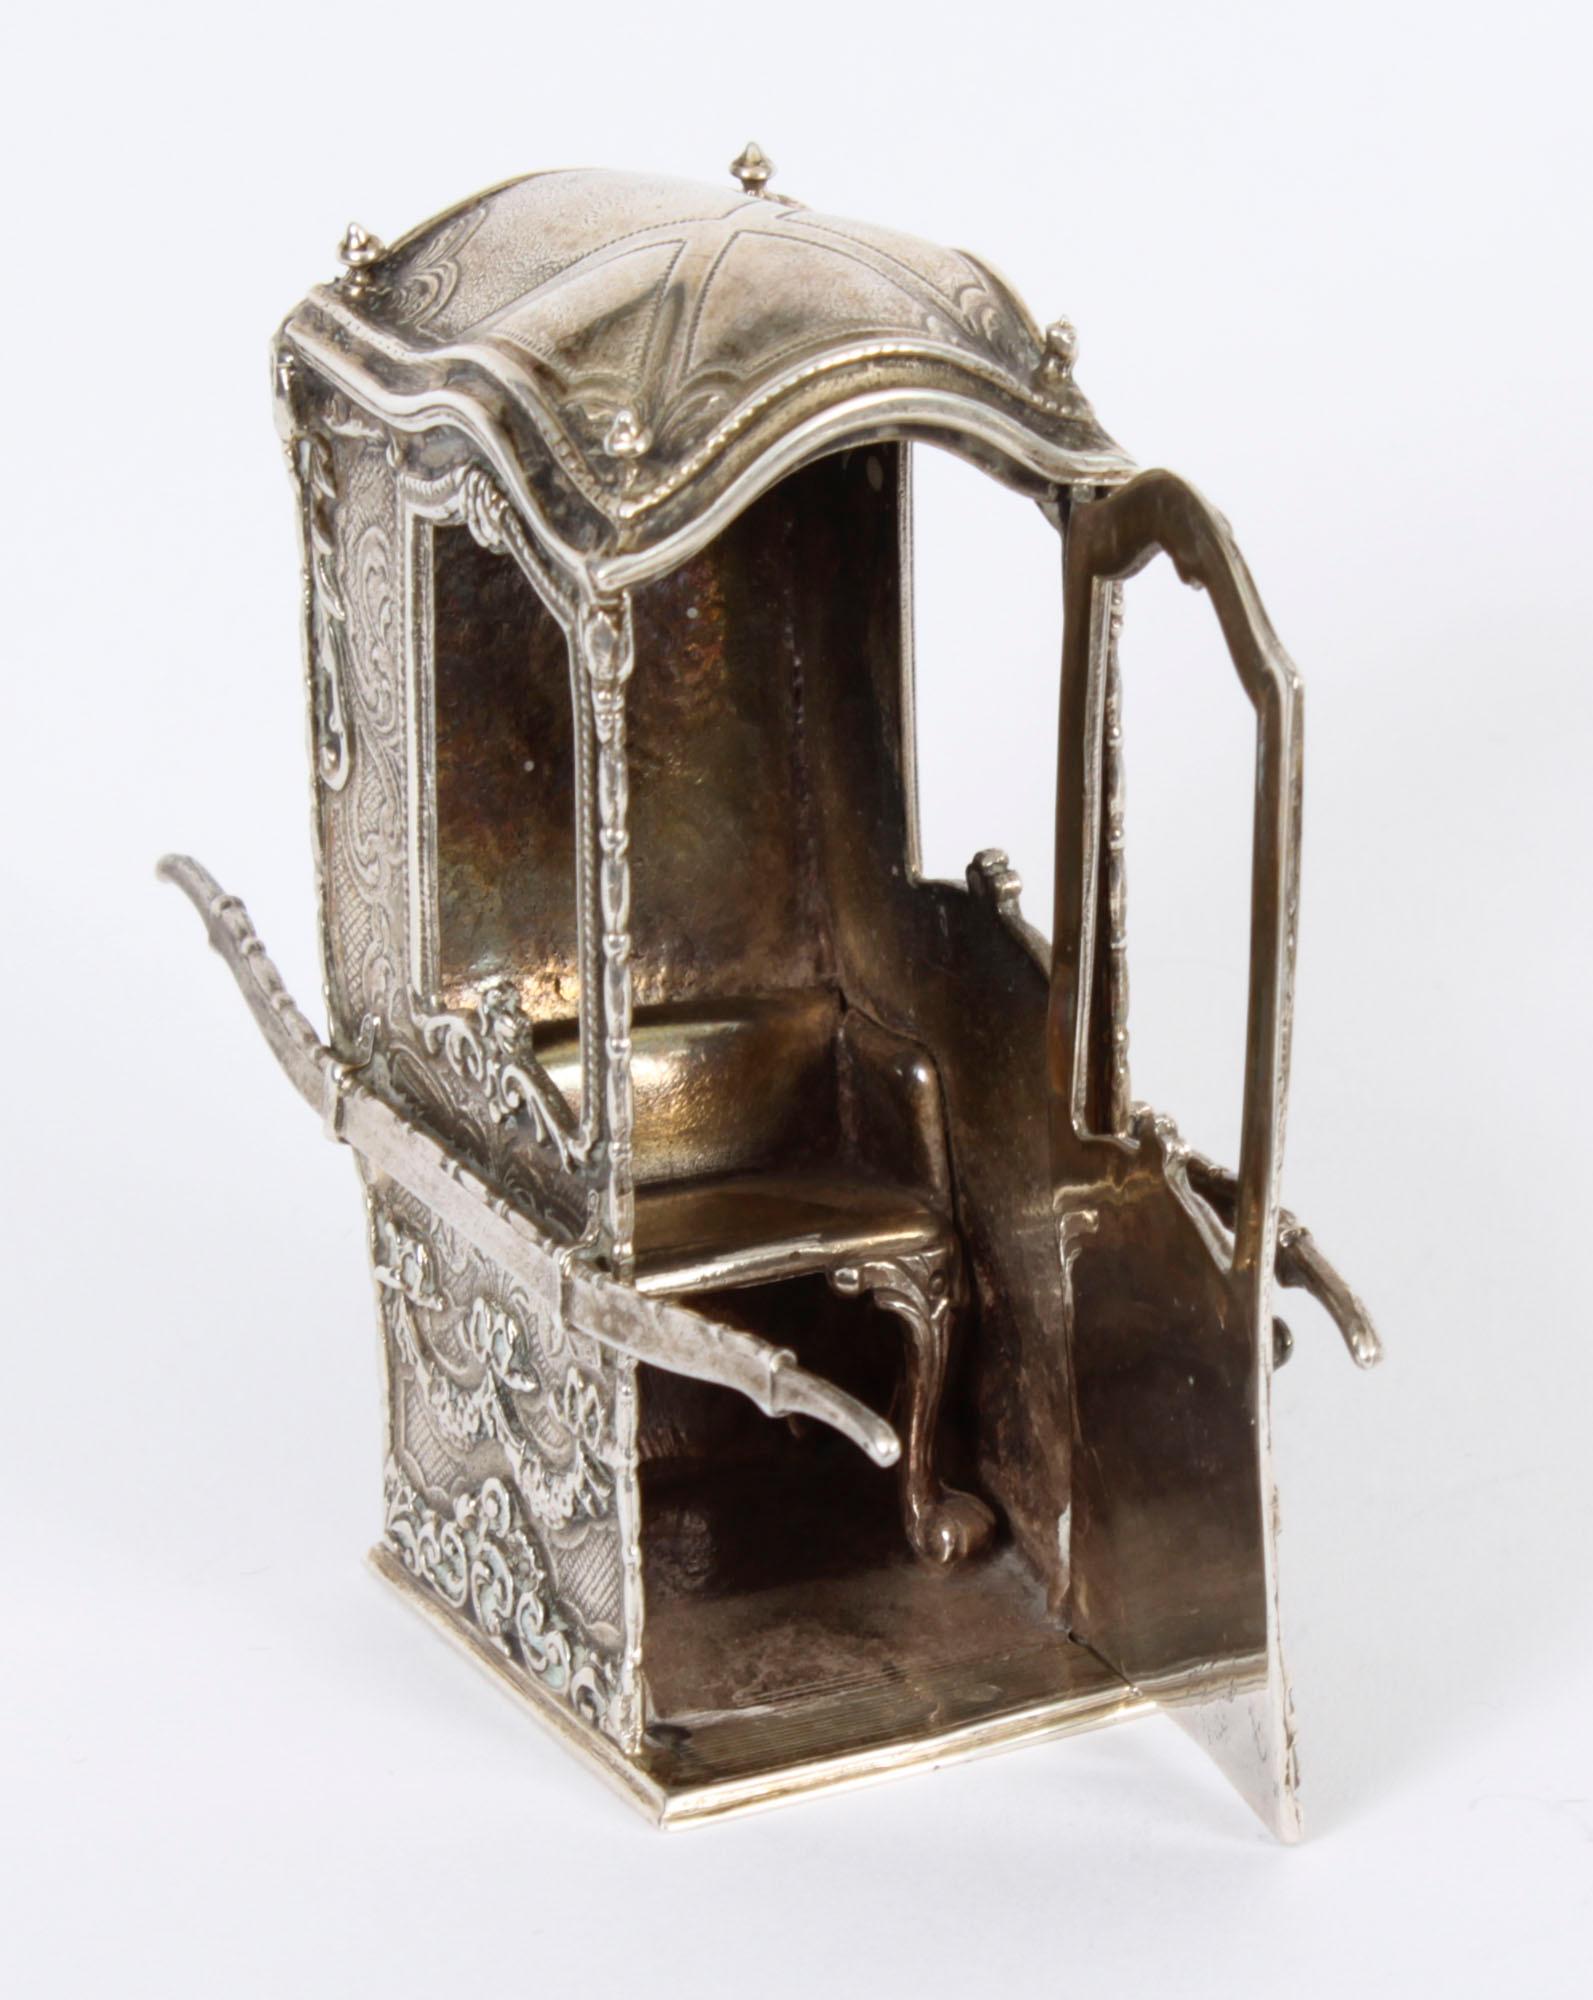 Se trata de una encantadora silla de manos en miniatura de plata 800 francesa, Circa 1870 en fecha.

La silla sedán está bellamente detallada, la puerta se abre para dejar ver un asiento, la plata con una fabulosa decoración en relieve.

Estado:
En